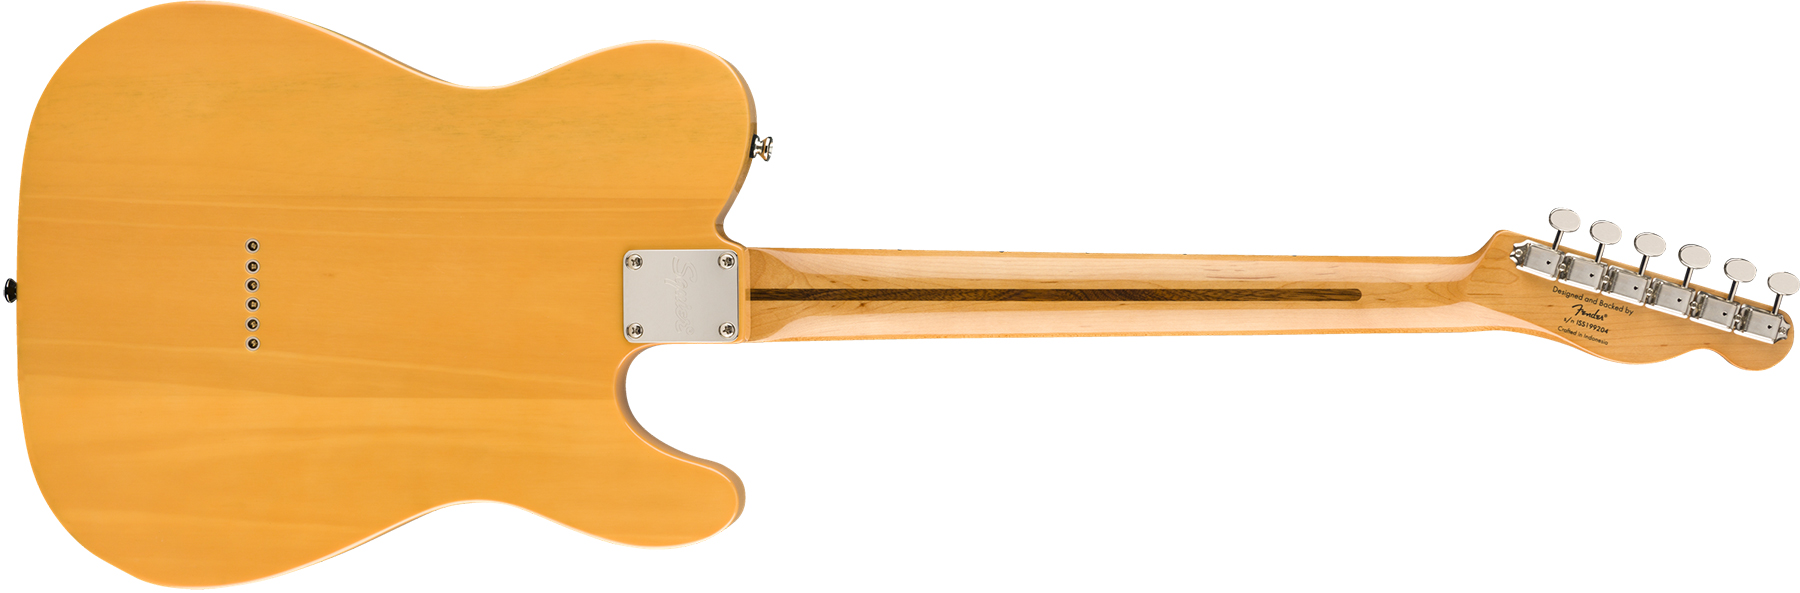 Squier Tele '50s Lh Gaucher Classic Vibe 2019 Mn 2019 - Butterscotch Blonde - Guitarra electrica para zurdos - Variation 1